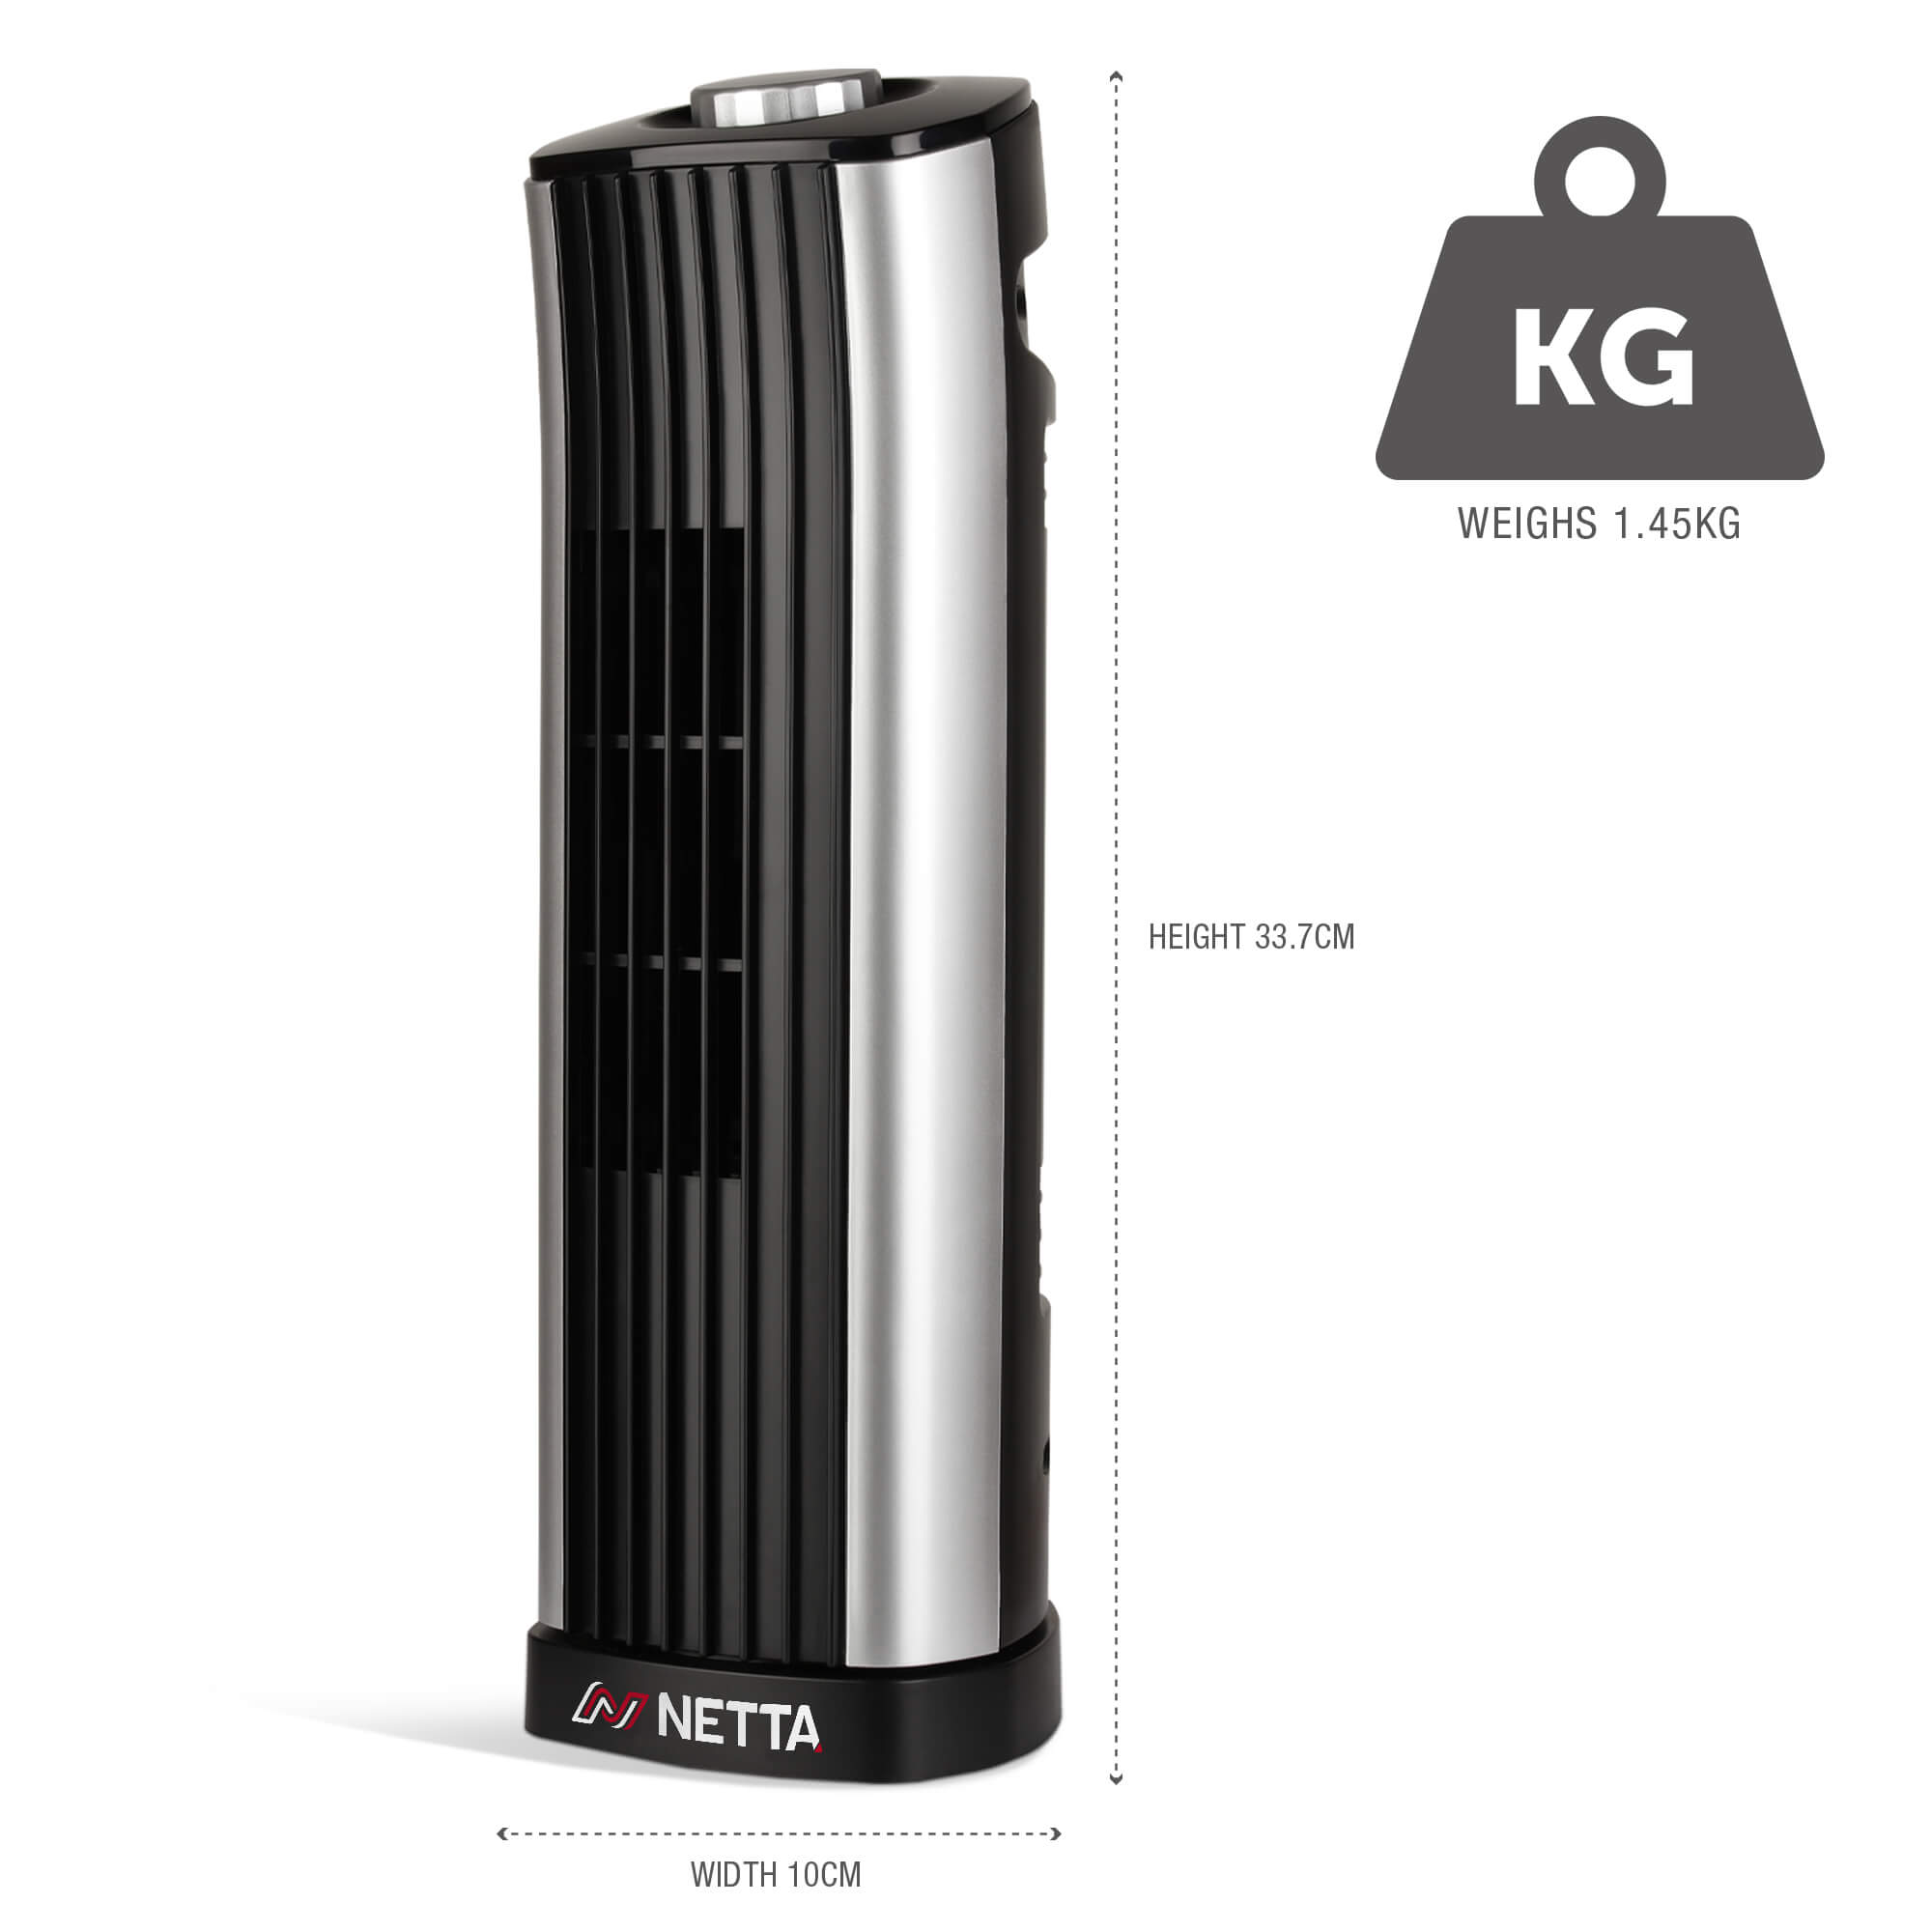 NETTA 14 Inch Desk Tower Fan - Black & Silver